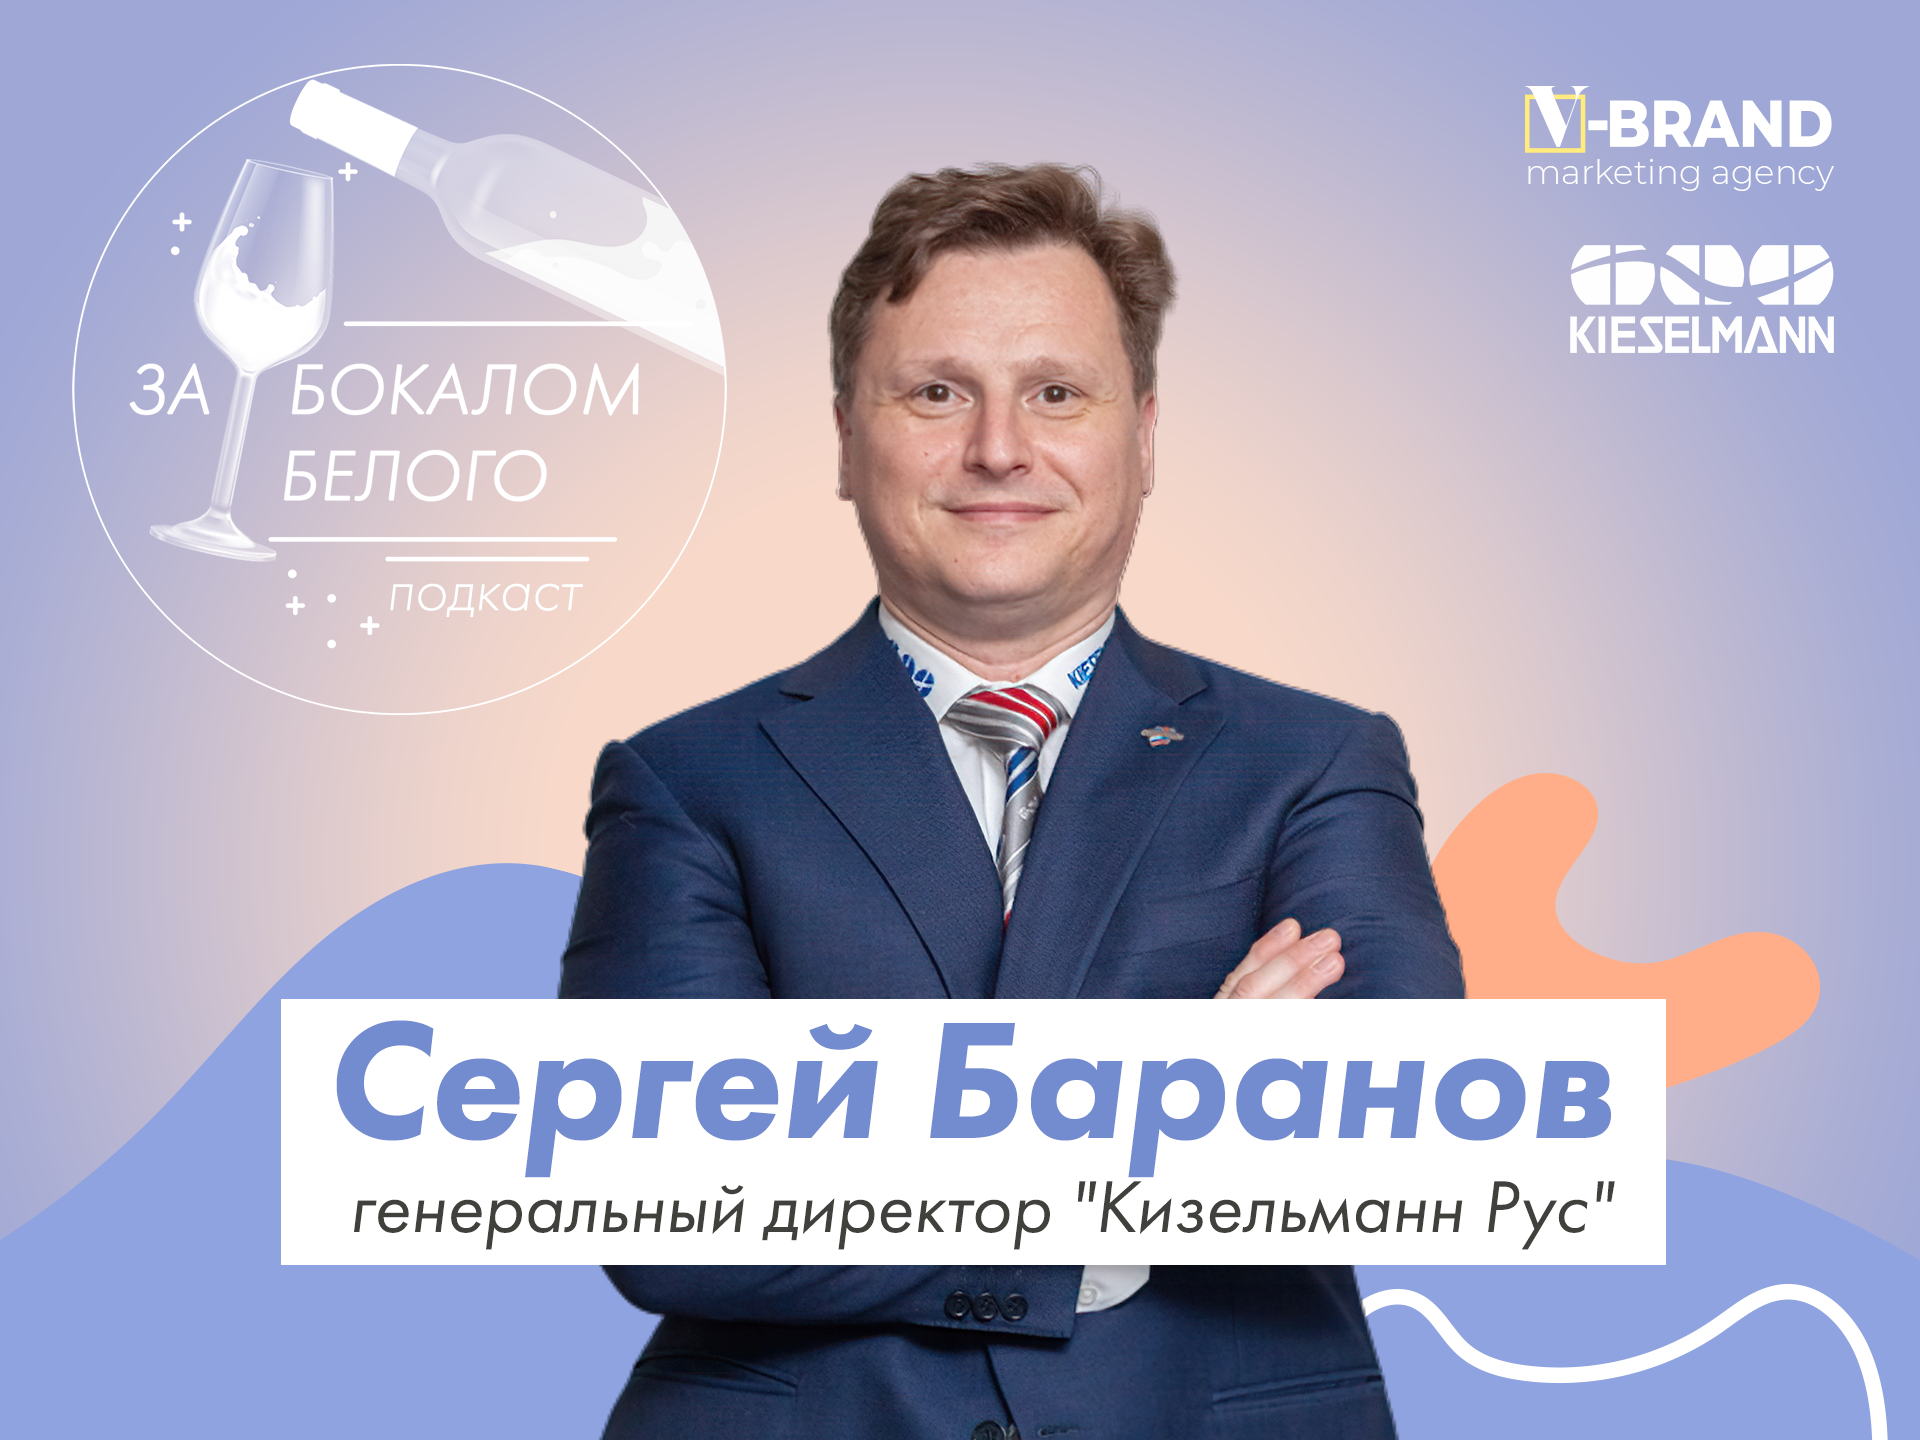 Сергей Баранов открытие инвестиции